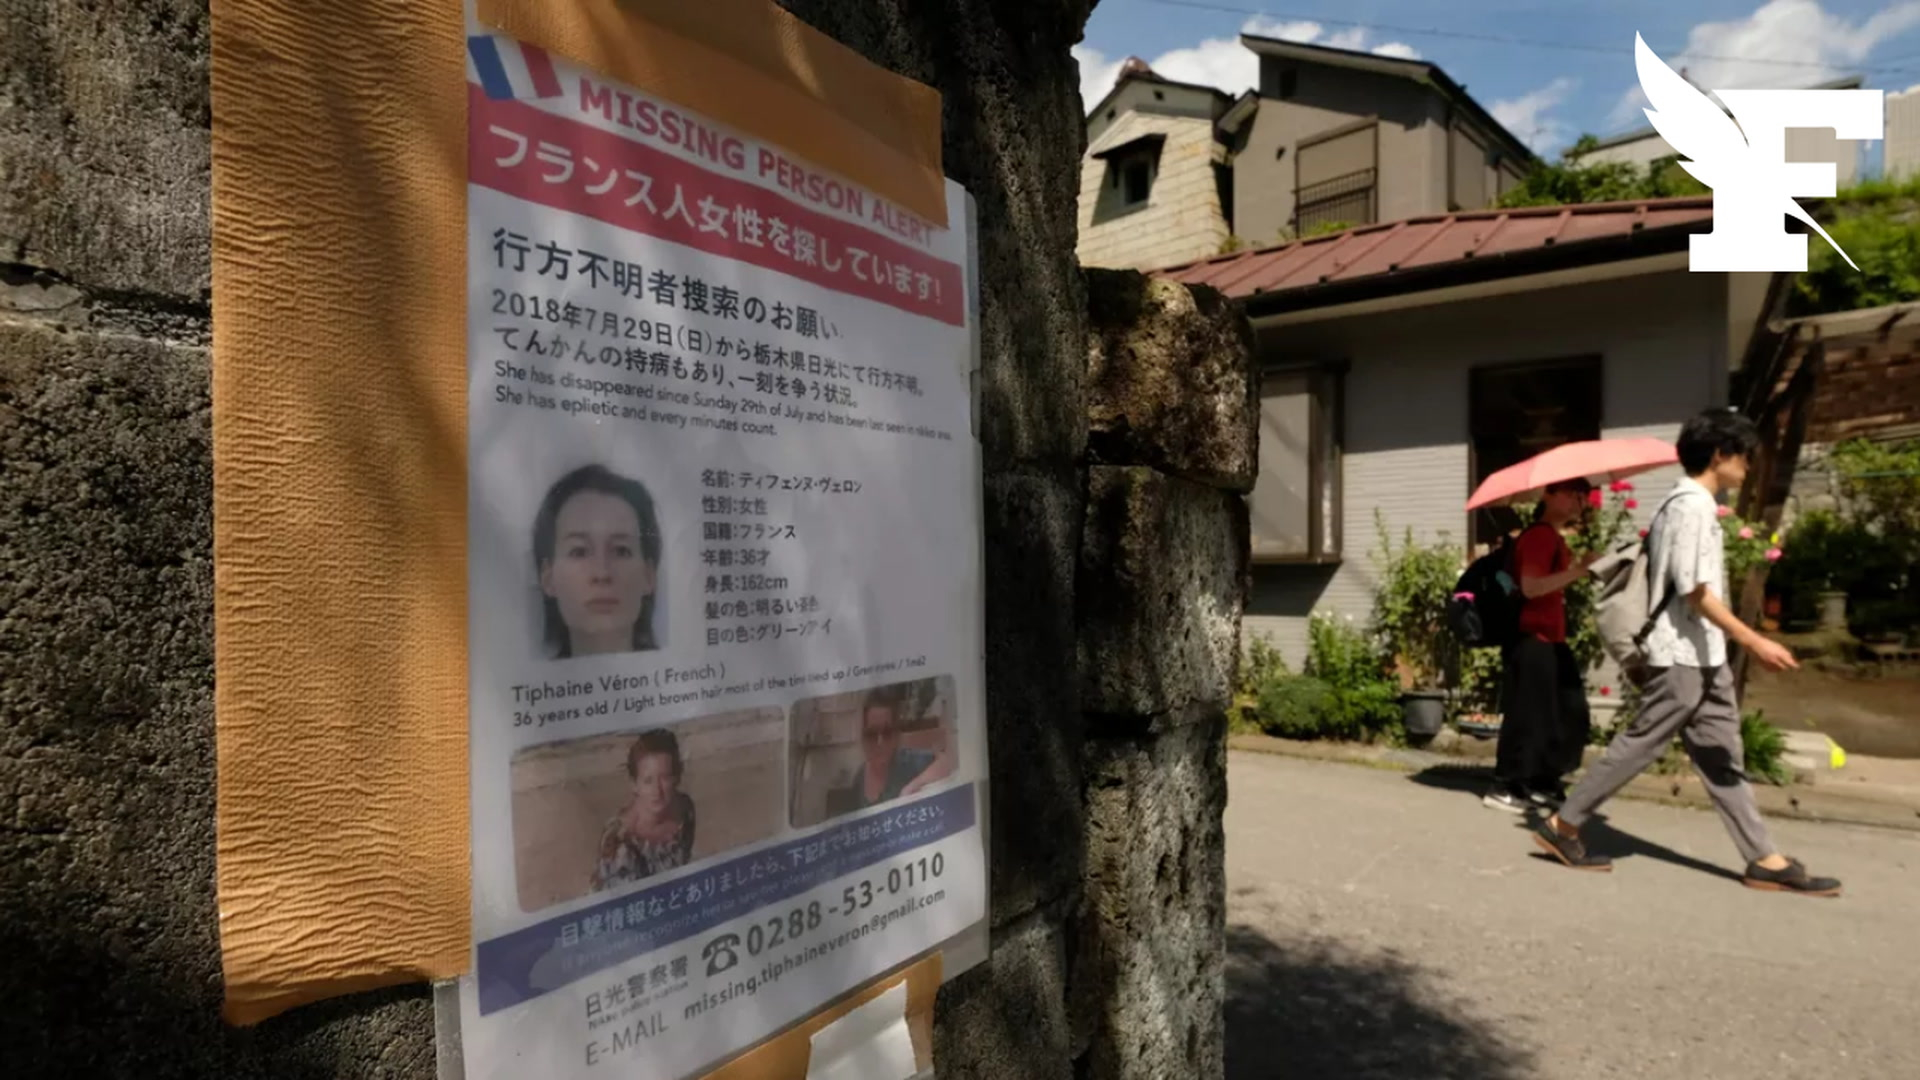 On n’exclut pas qu’elle soit retenue prisonnière : cinq ans après, que sait-on de la disparition de Tiphaine Véron au Japon ?